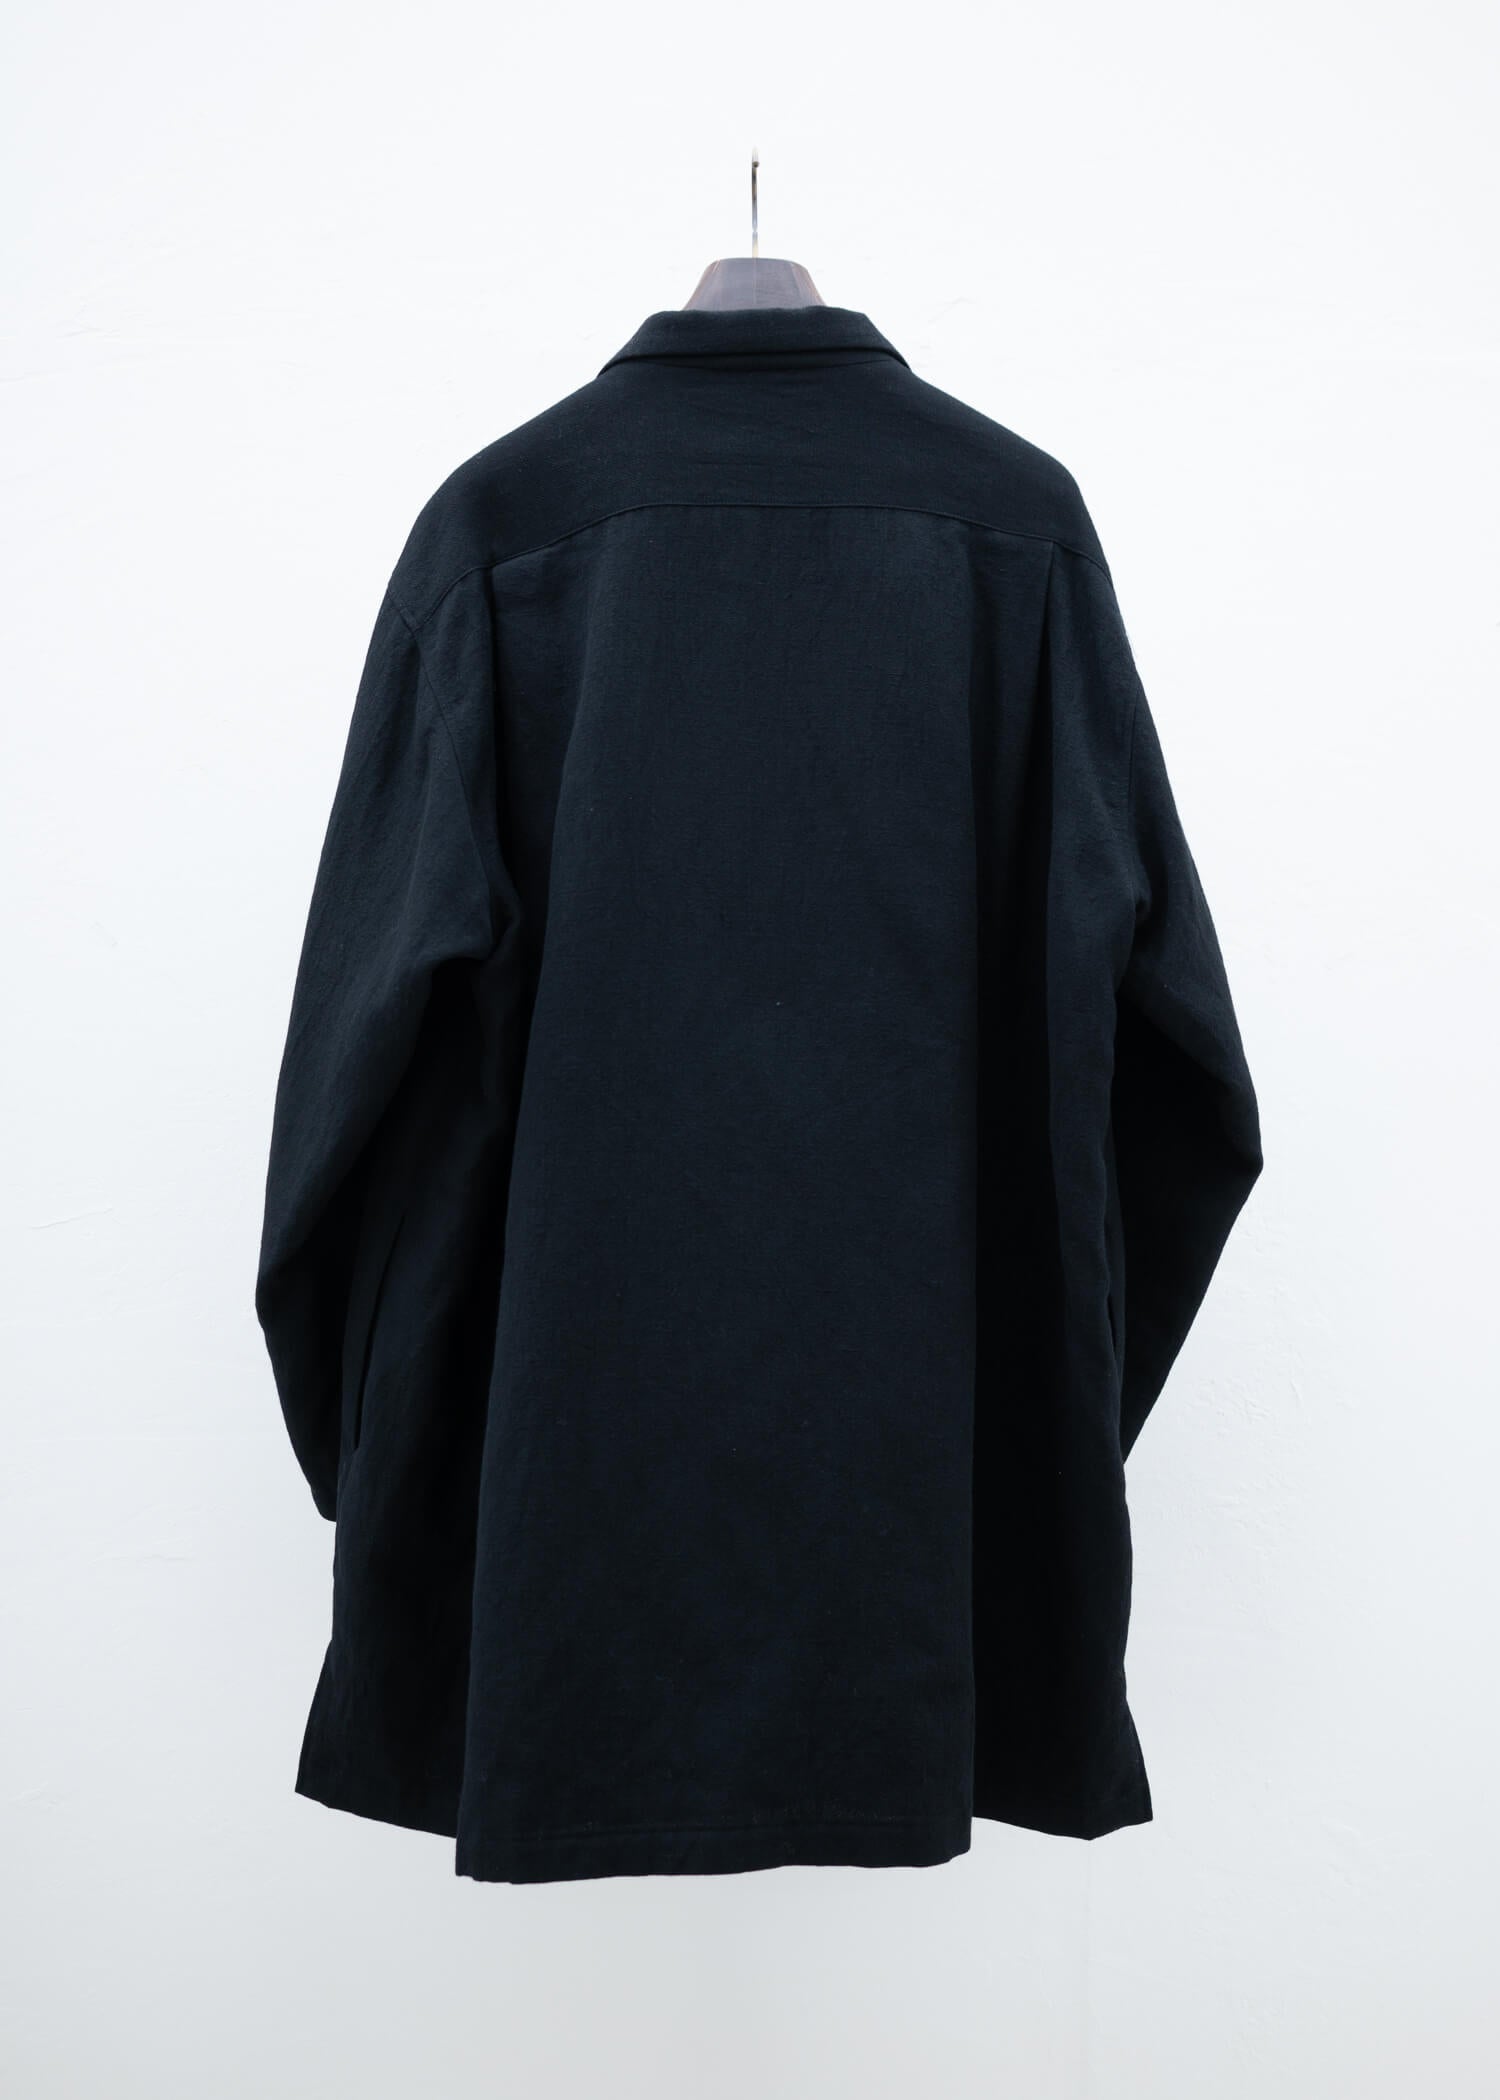 kujaku by Takuma Nishizaka Nogeshi Coat – ARCHIVE OF FASHION